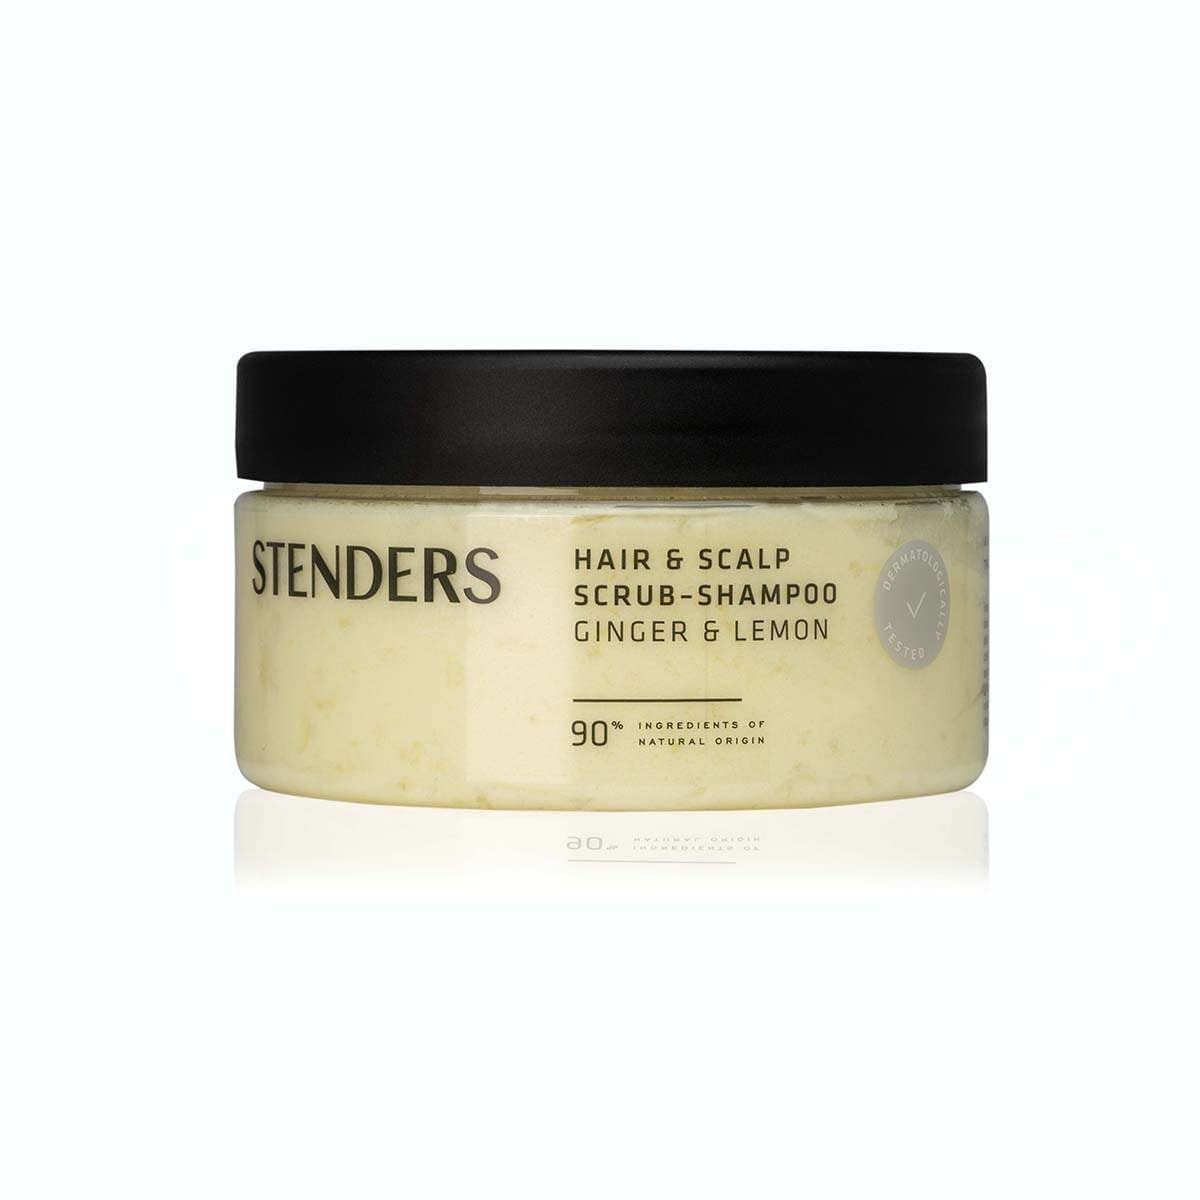 STENDERS Hair & scalp scrub-shampoo Ginger & Lemon